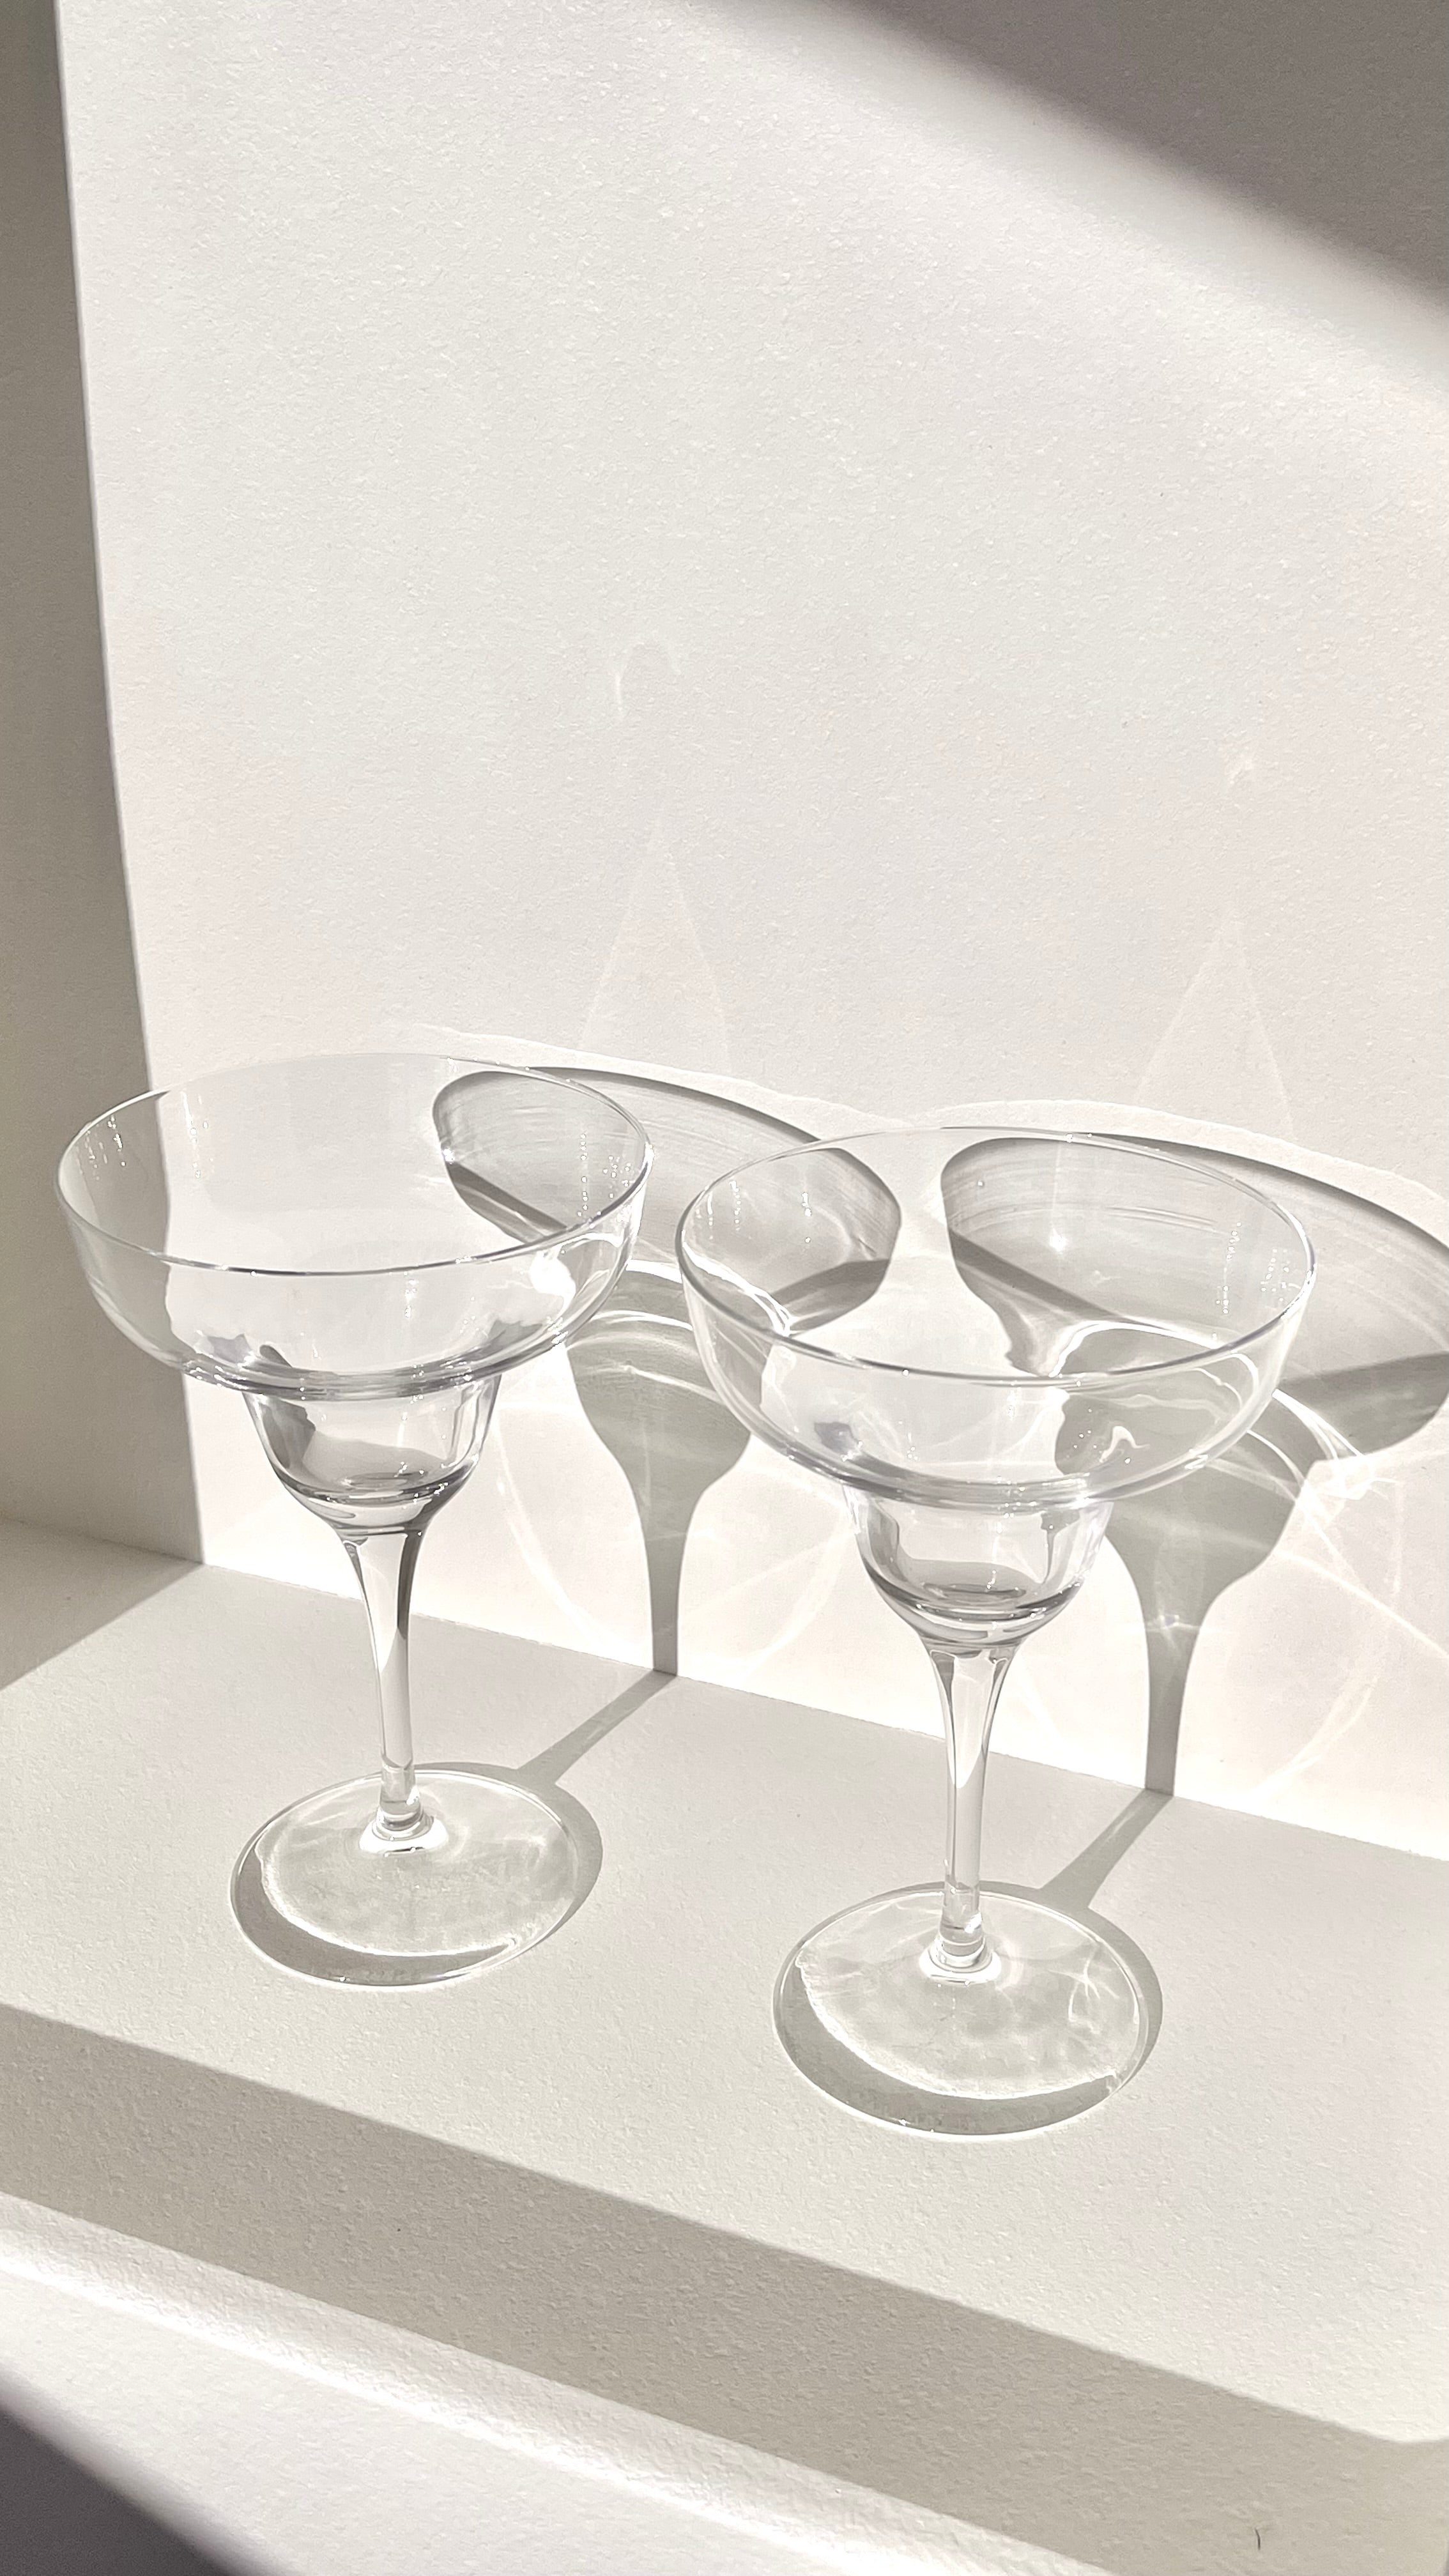 Novecento Margarita Glasses - Set of 2